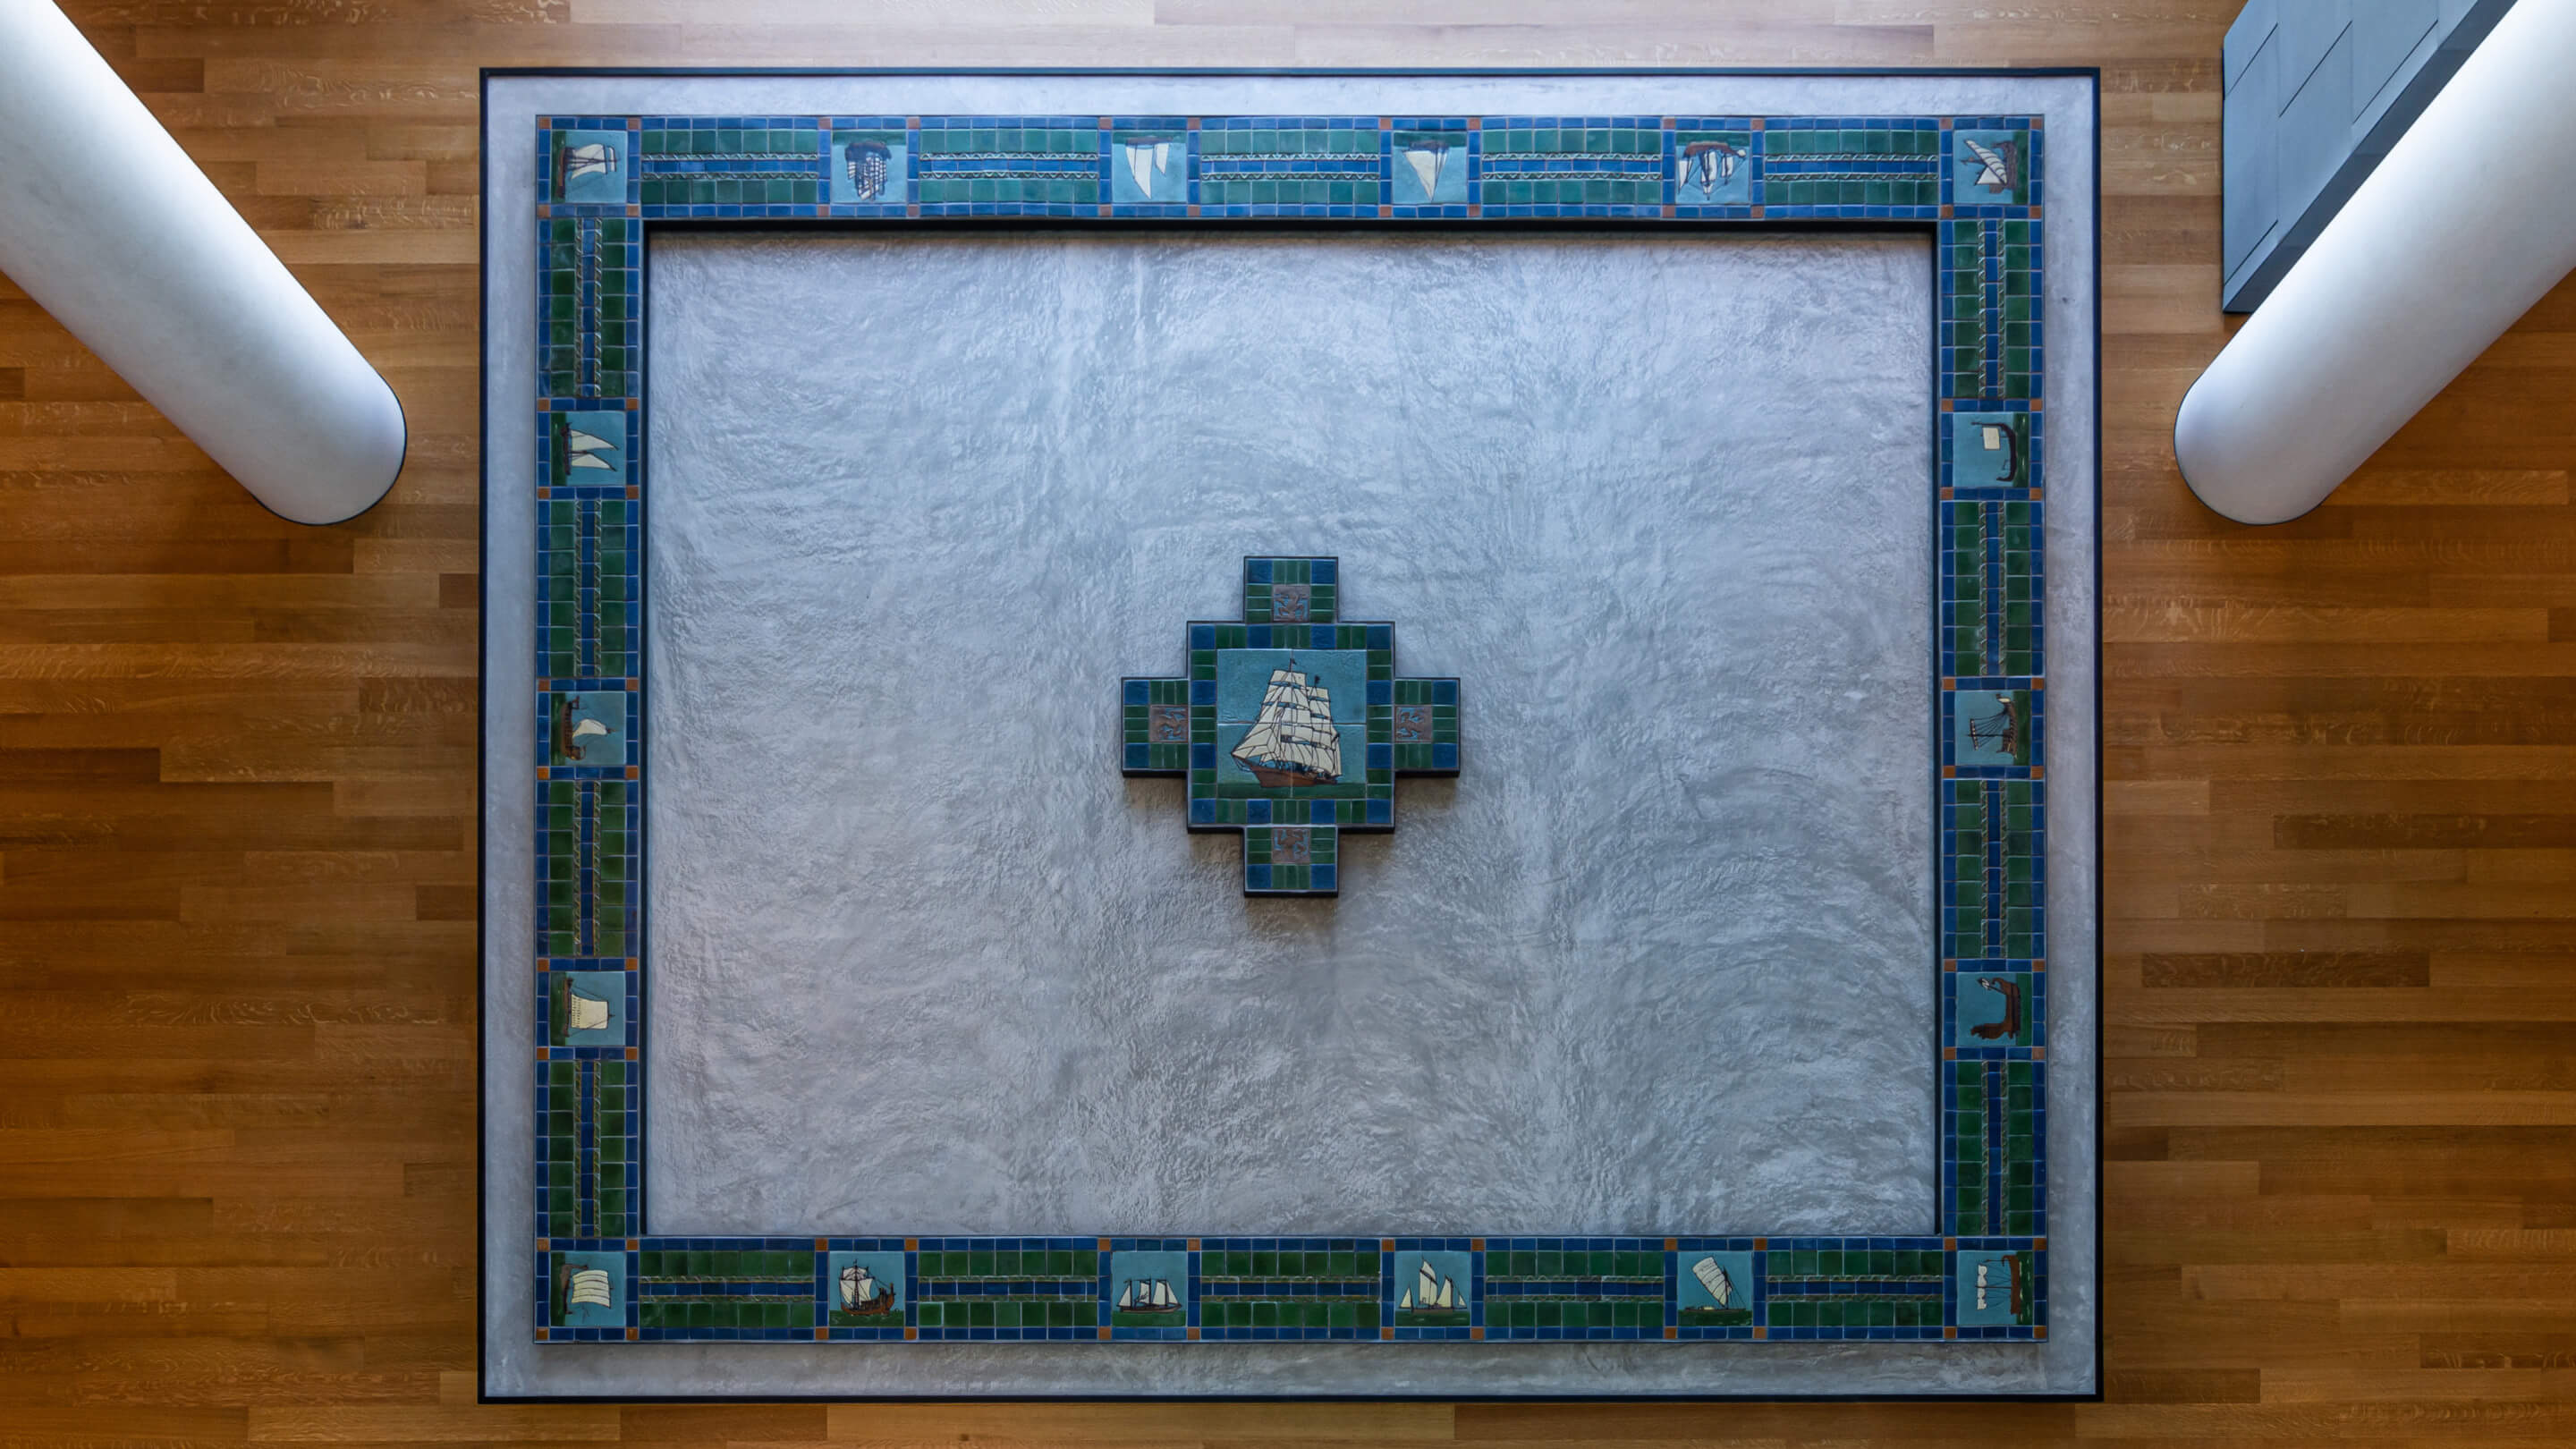 Overhead shot of a tile mosaic